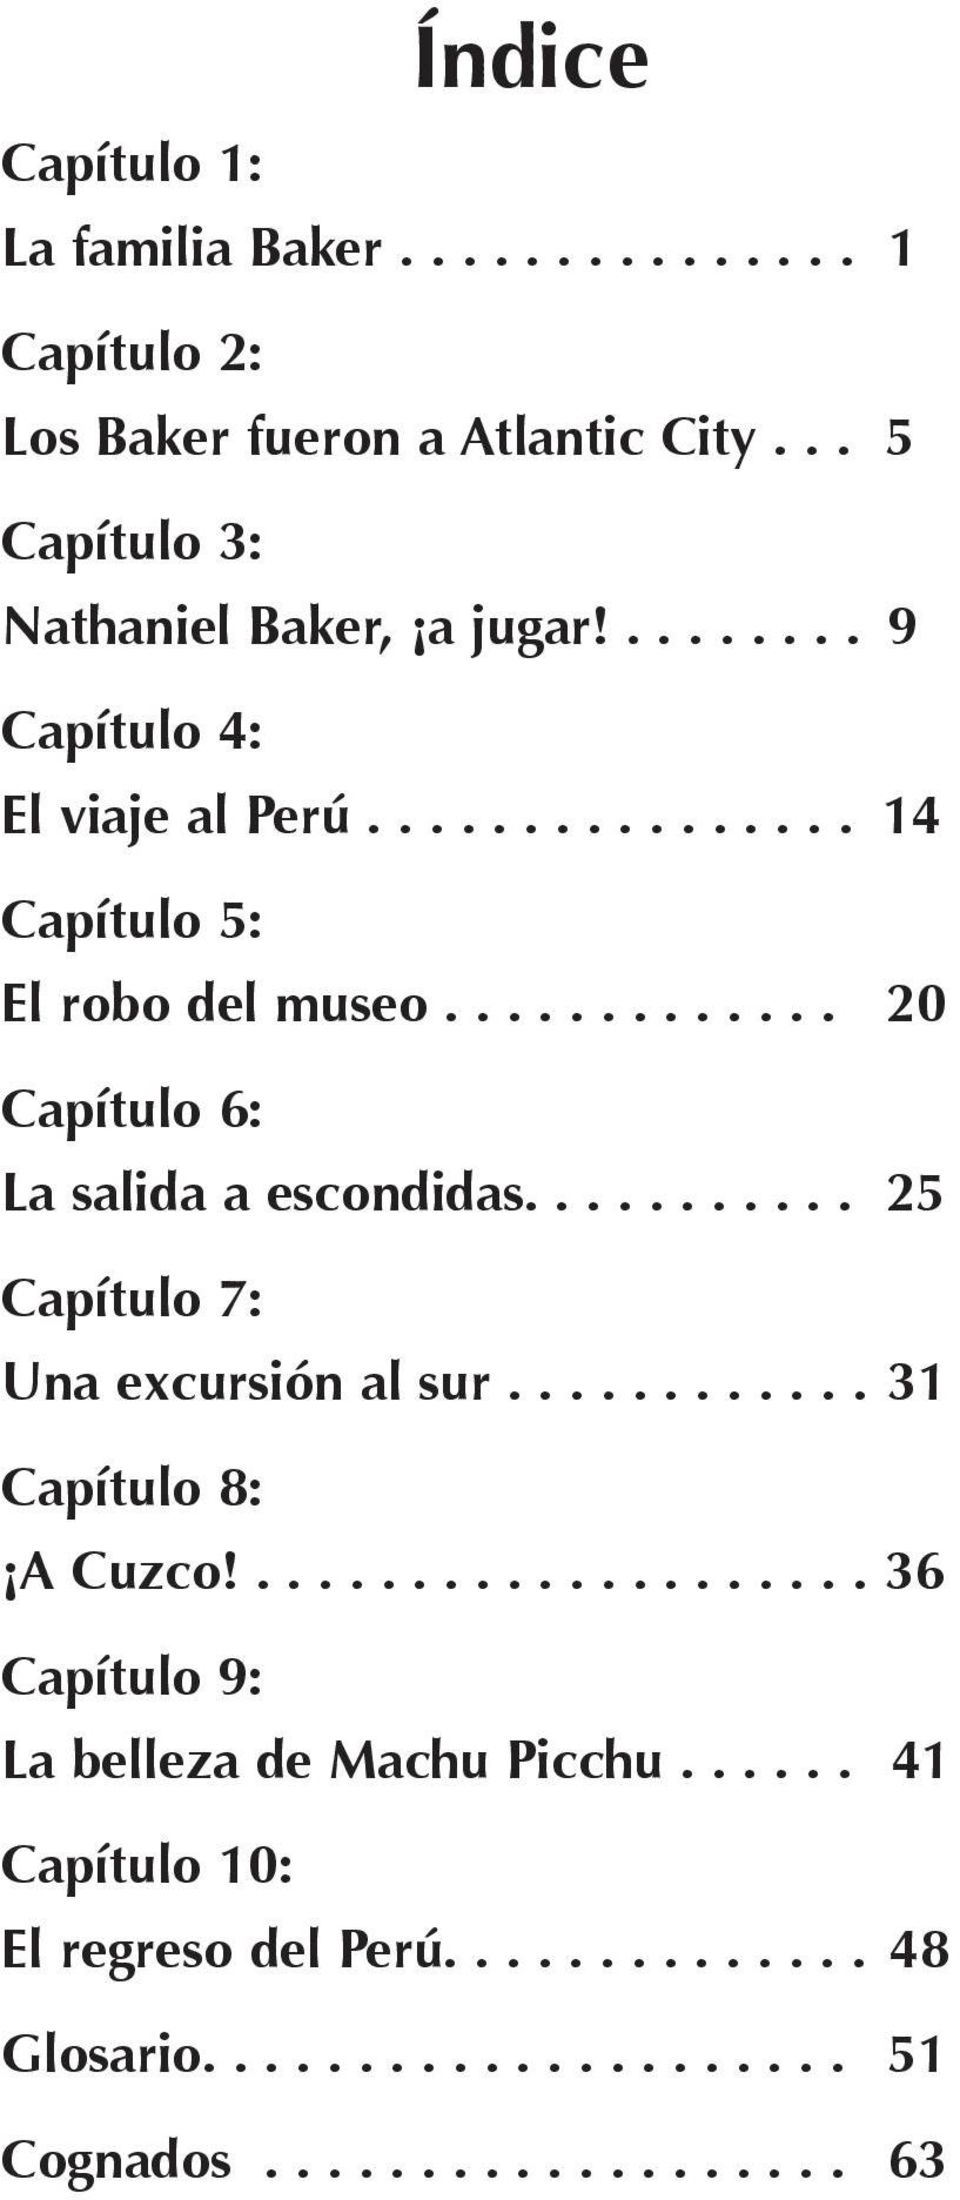 ............ 20 Capítulo 6: La salida a escondidas........... 25 Capítulo 7: Una excursión al sur............ 31 Capítulo 8: A Cuzco!